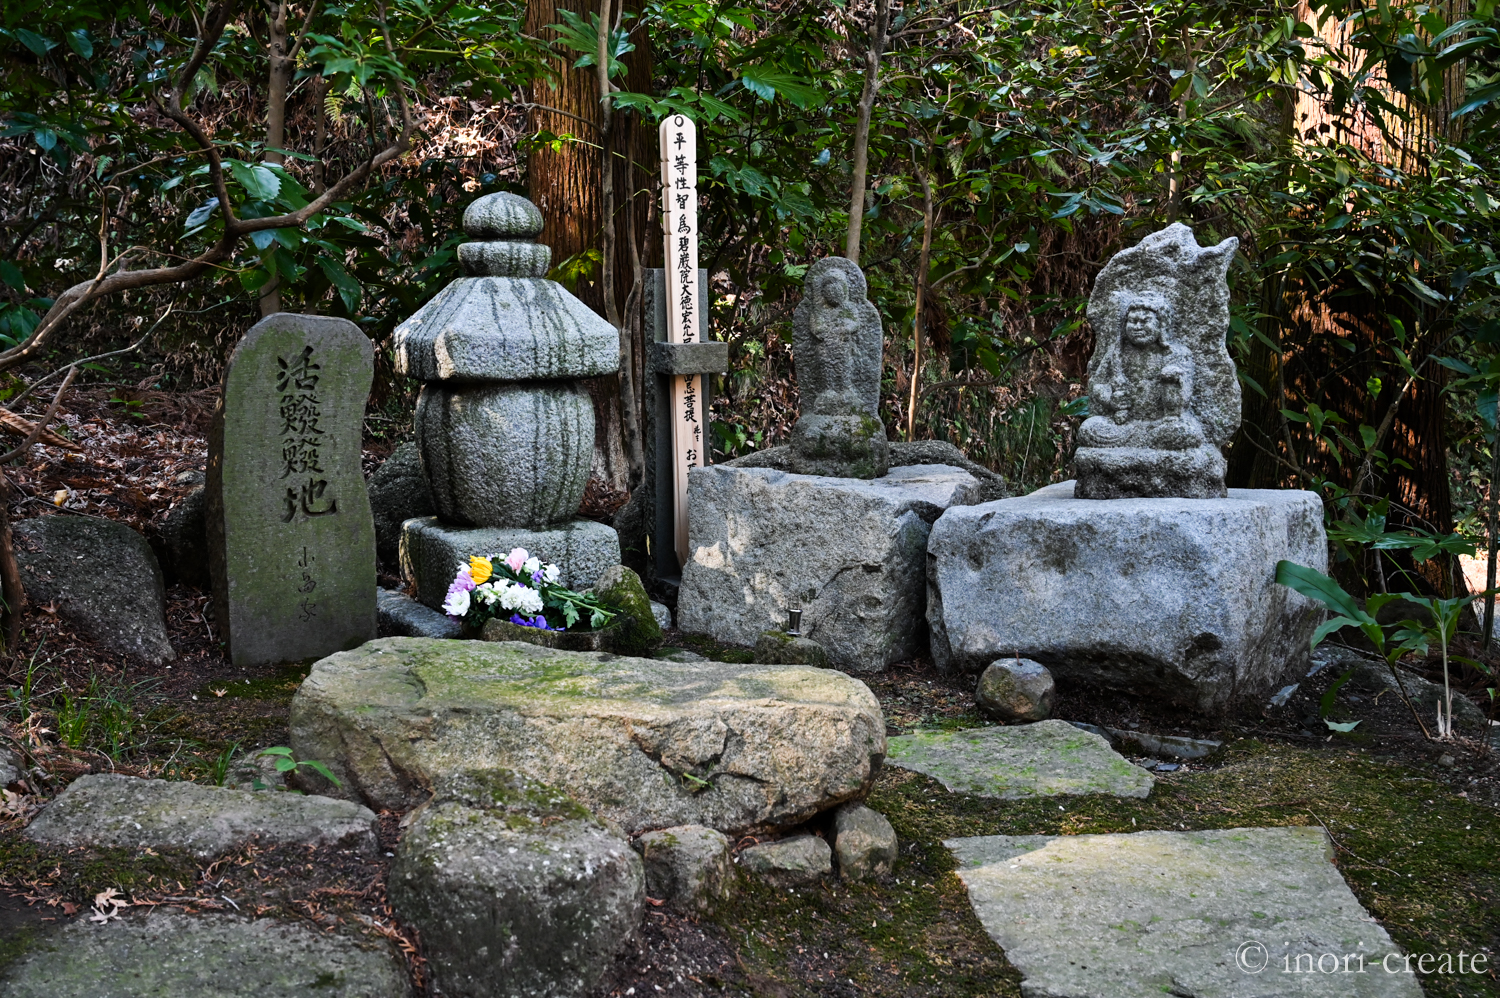 鎌倉東慶寺の小畠宏允氏の墓所。「お墓100年プロジェクト」「石文化研究所」の有志が集まり没後七回忌法要を行った。法要後に参列者が墓前にお花を手向けた。